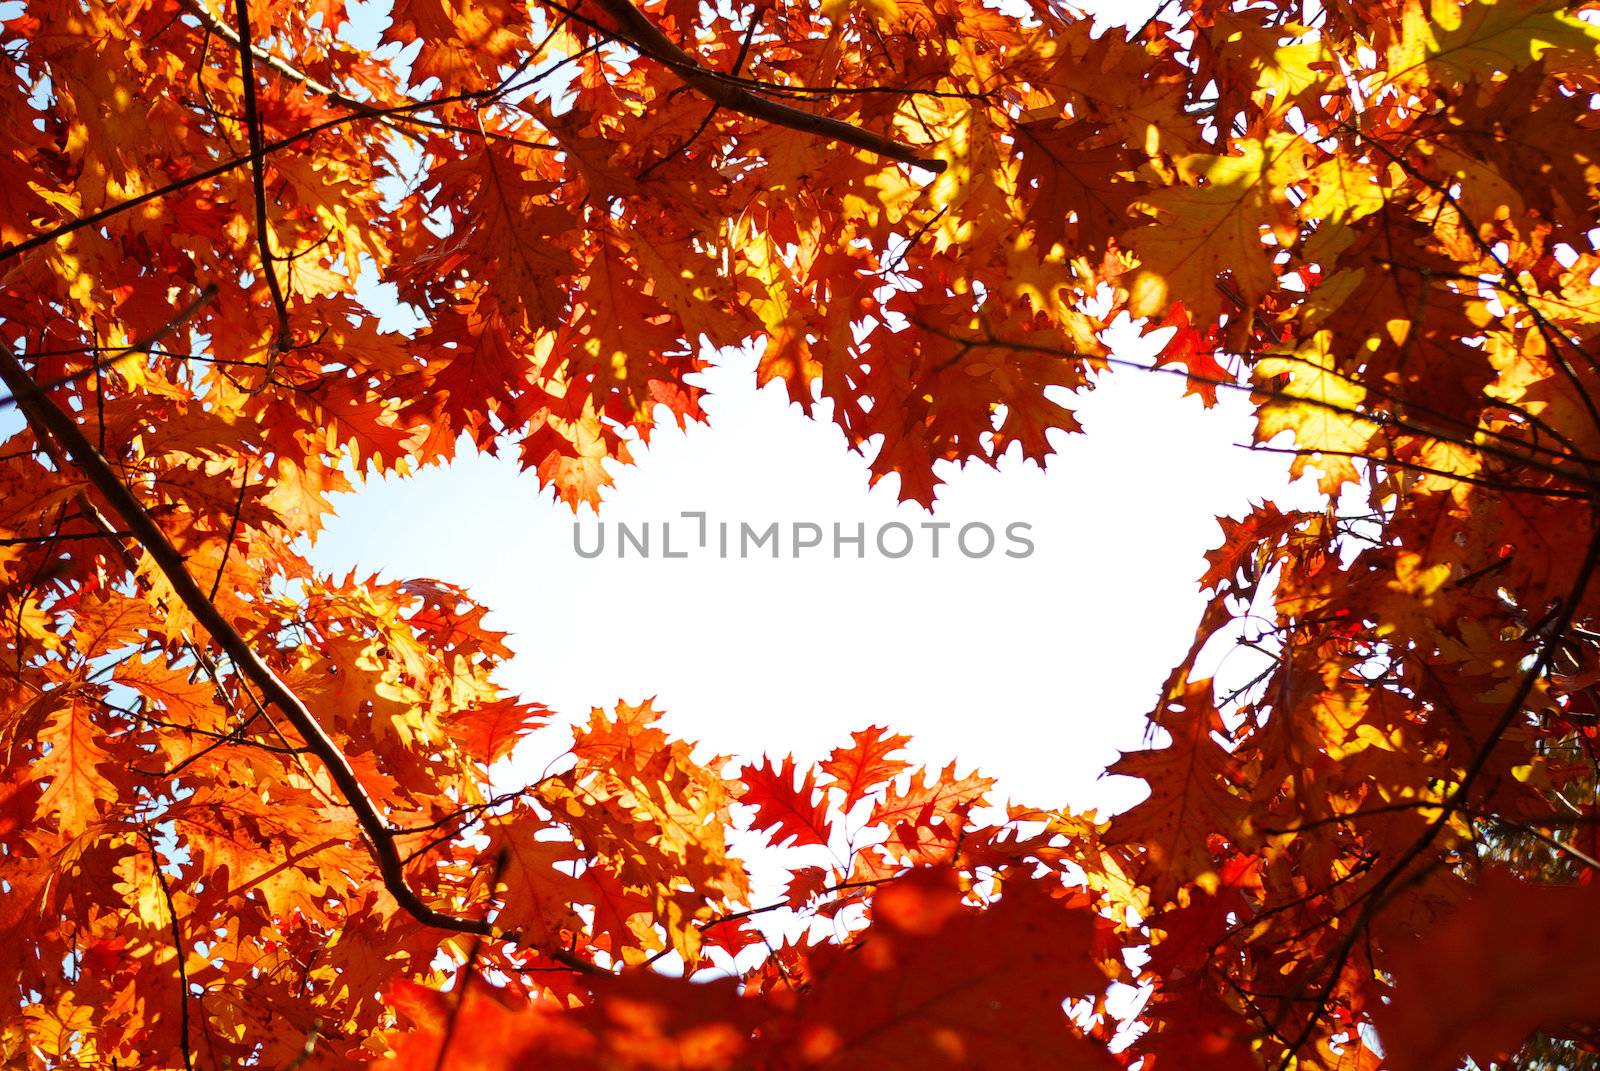 autumn leaves by Pakhnyushchyy